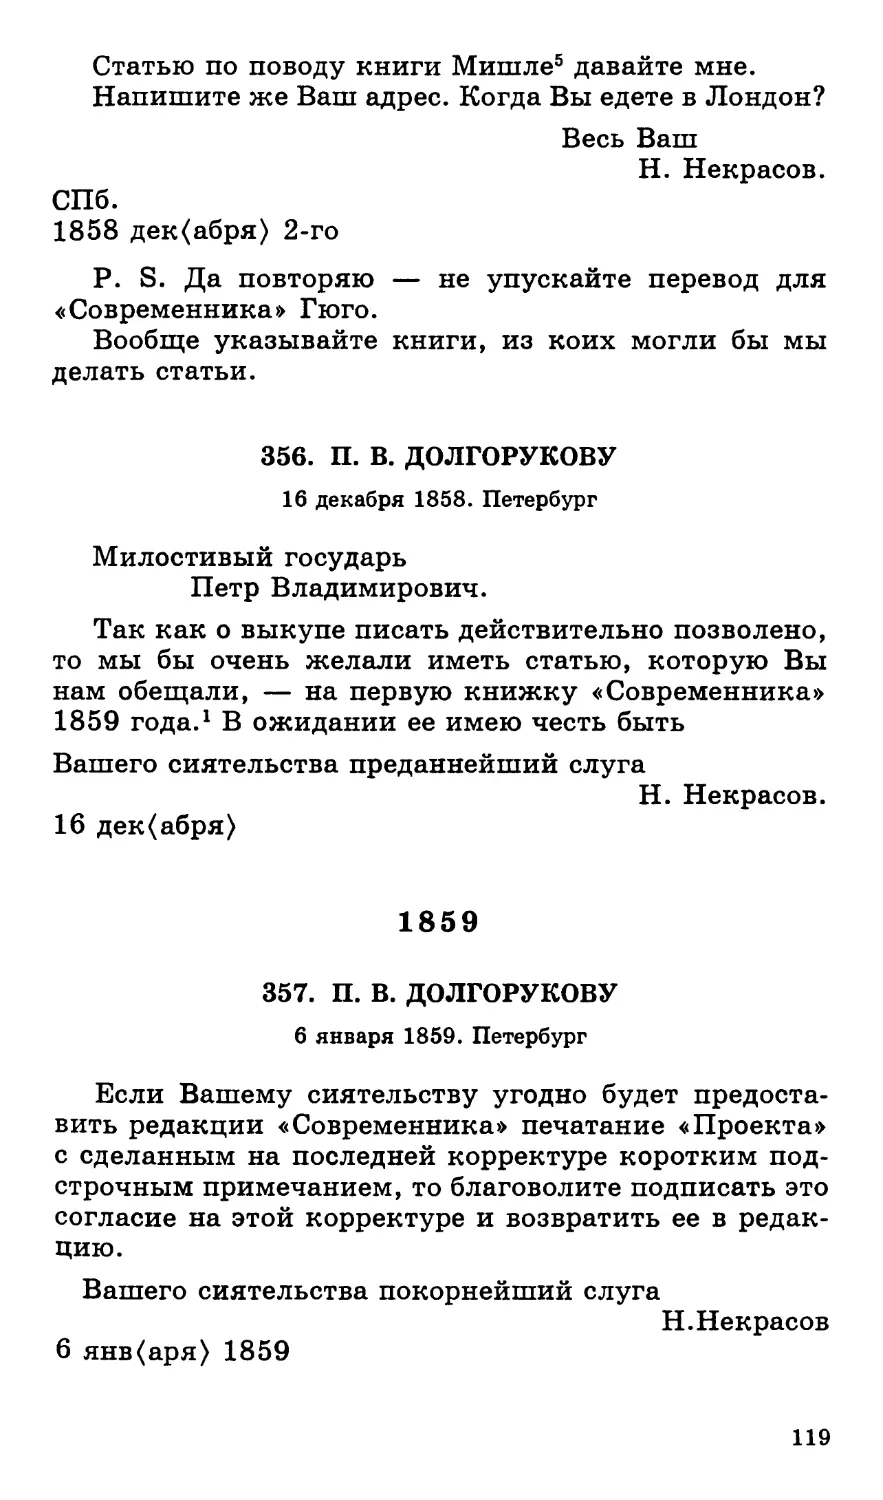 356.П. В. Долгорукову. 16 декабря
1859